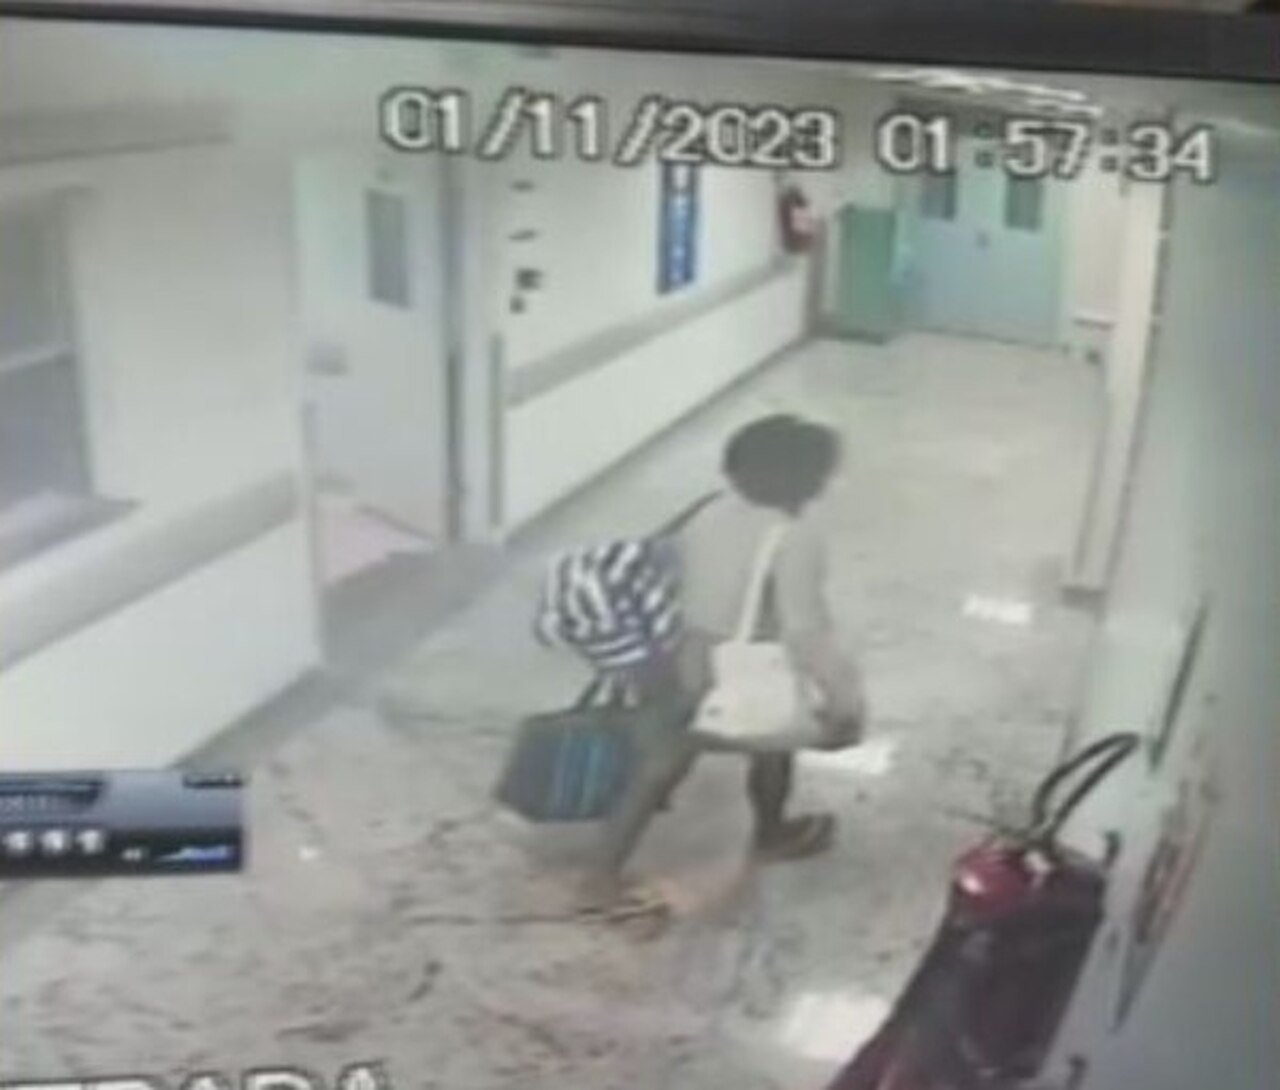 Na câmera de segurança foi possível ver uma mulher saindo da enfermaria com três bolsas grandes, à 1h57.